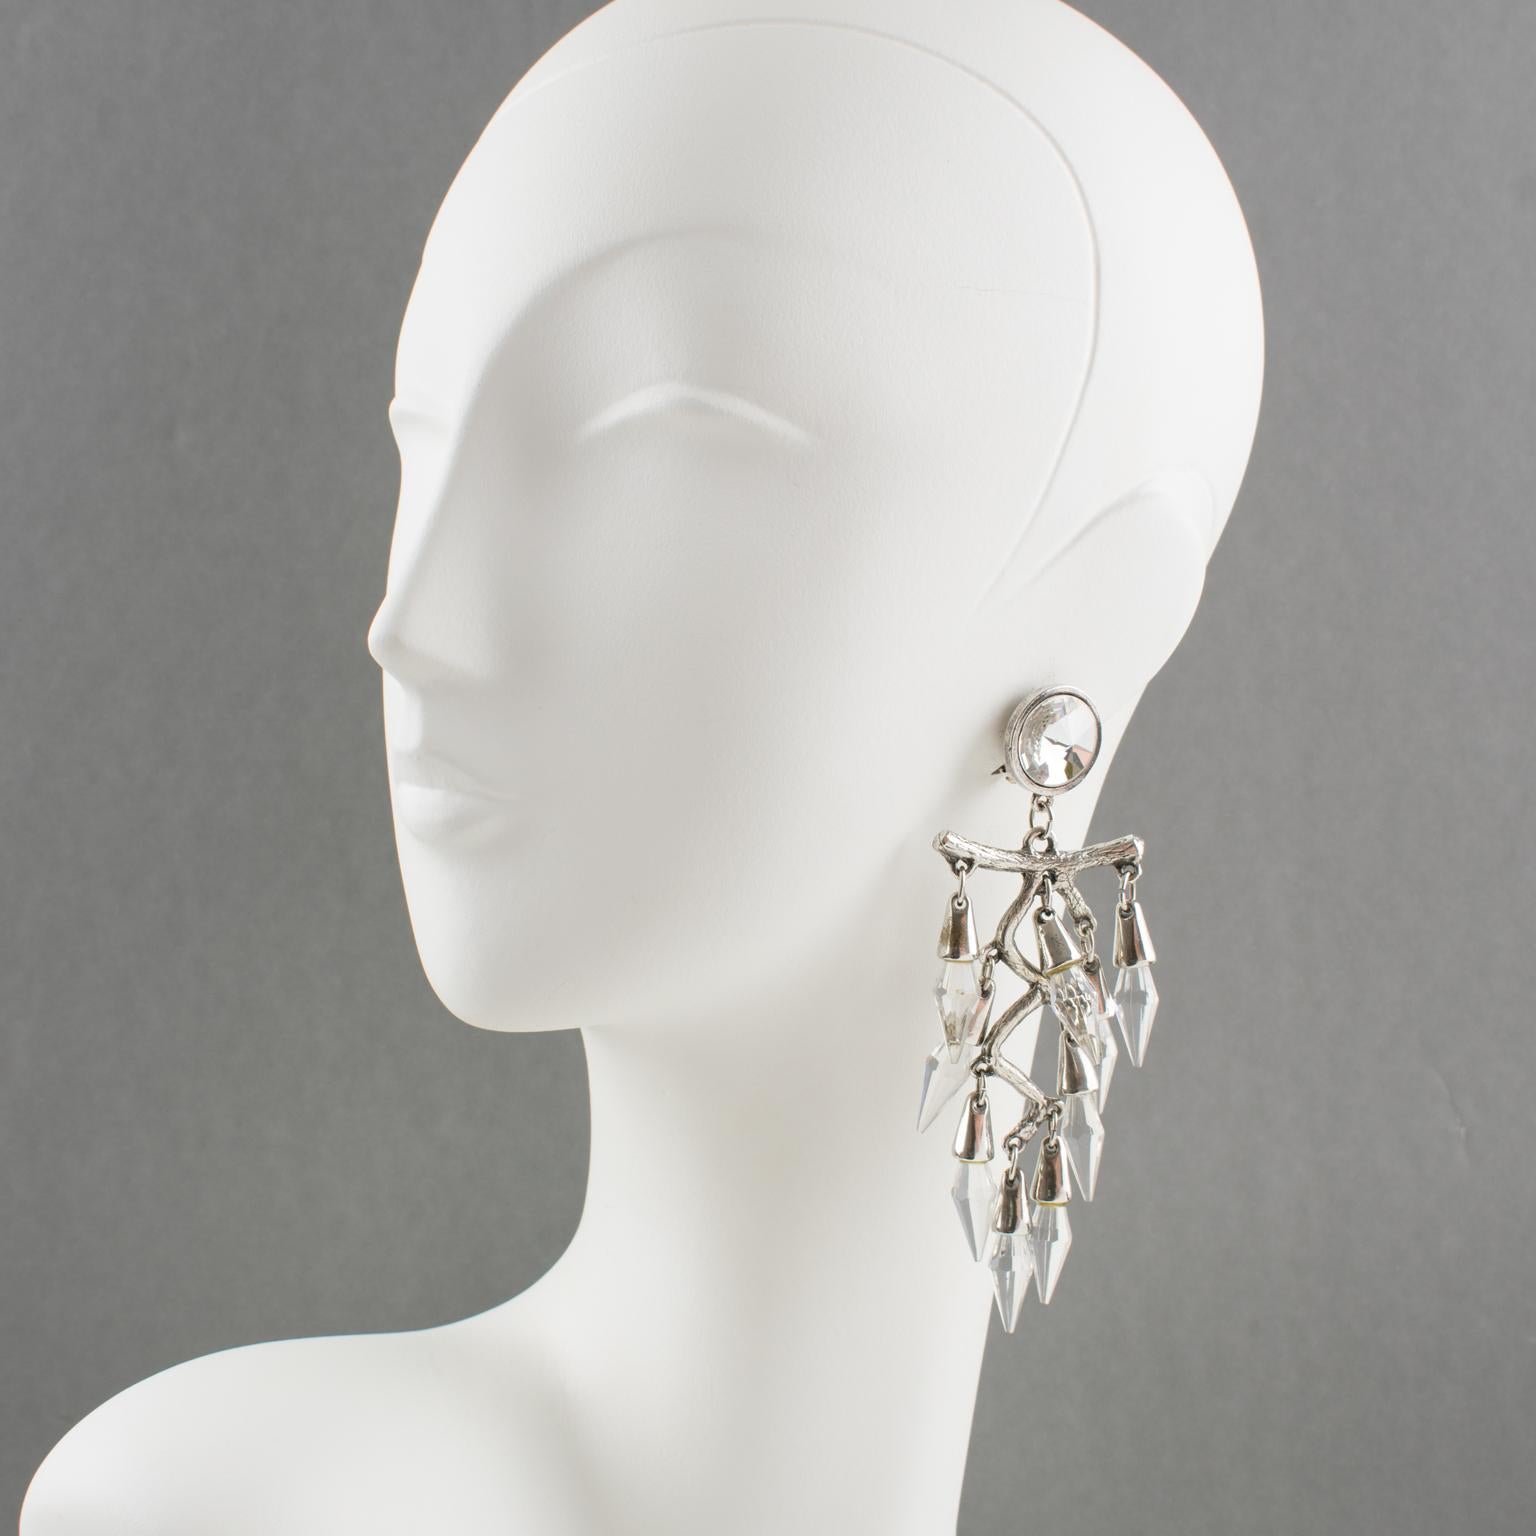 Ces adorables boucles d'oreilles clipsables en forme de chandelier surdimensionné présentent un design romantique avec une forme pendante et une grande branche stylisée en métal argenté, complétée par des perles de cristal facettées. Il n'y a pas de